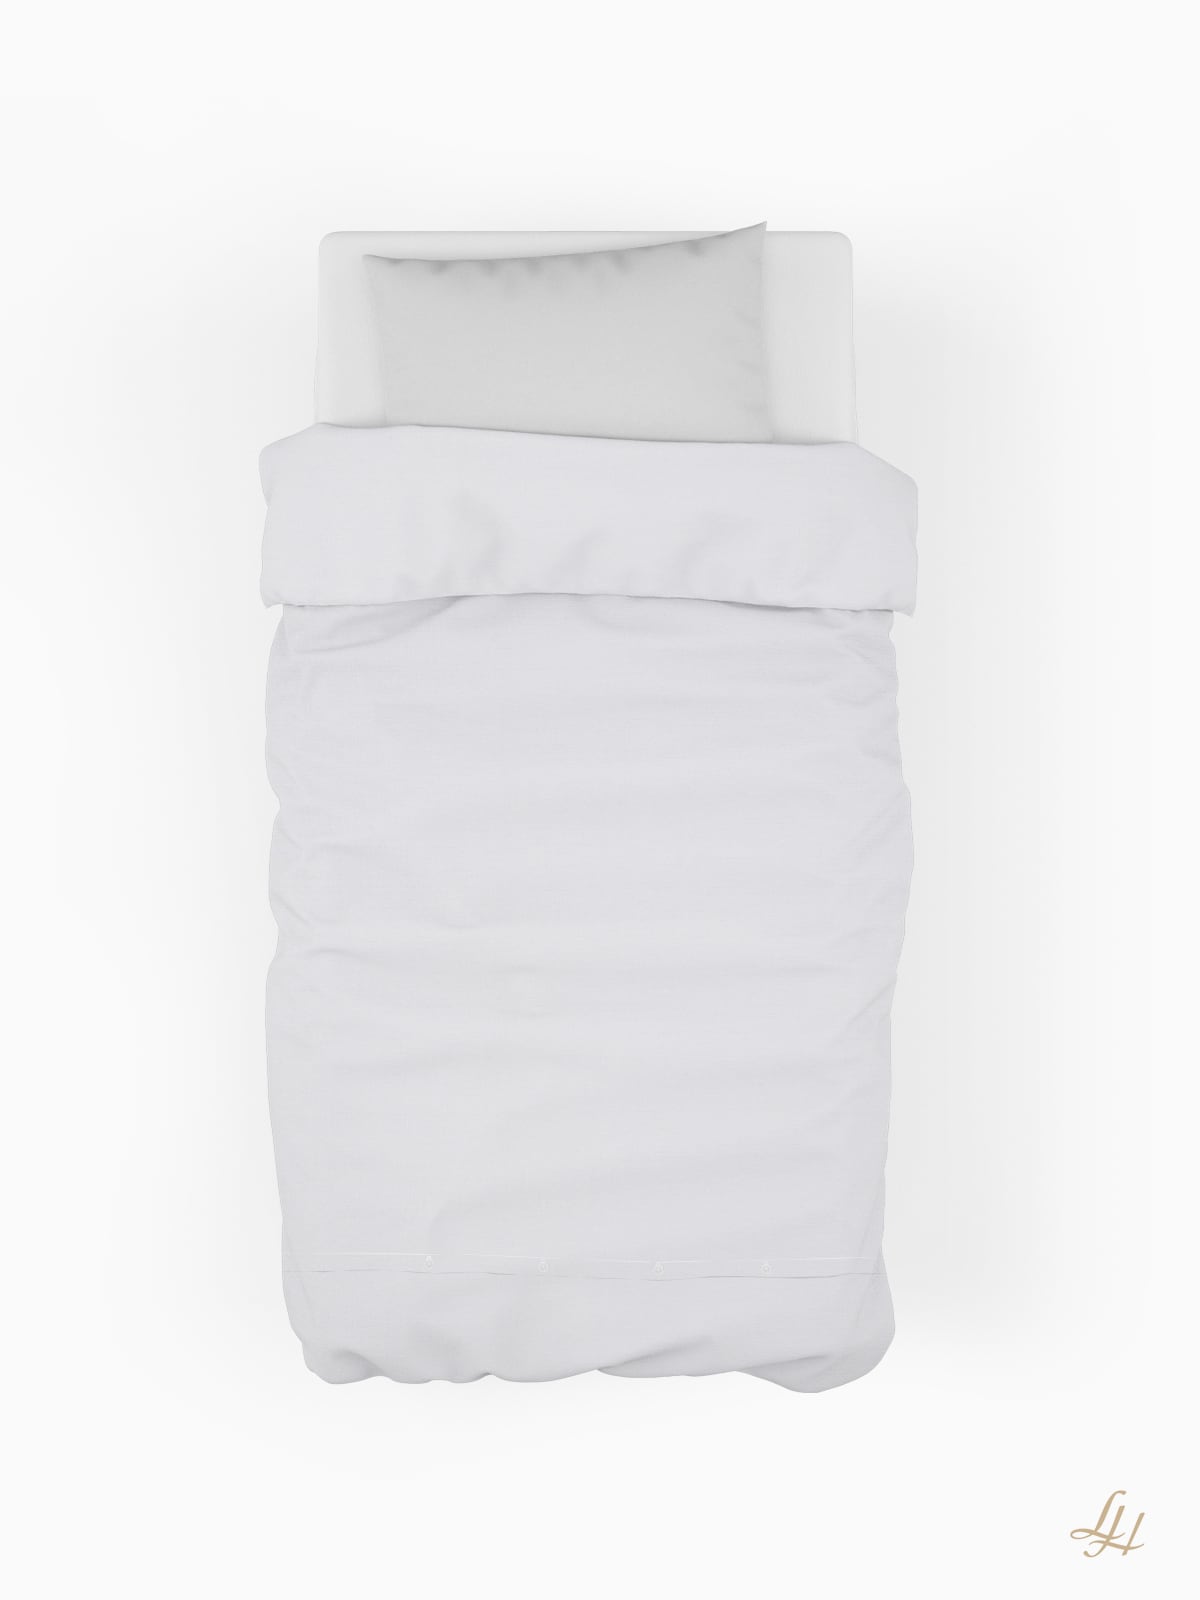 Bettbezug aus Halbleinen in weiß